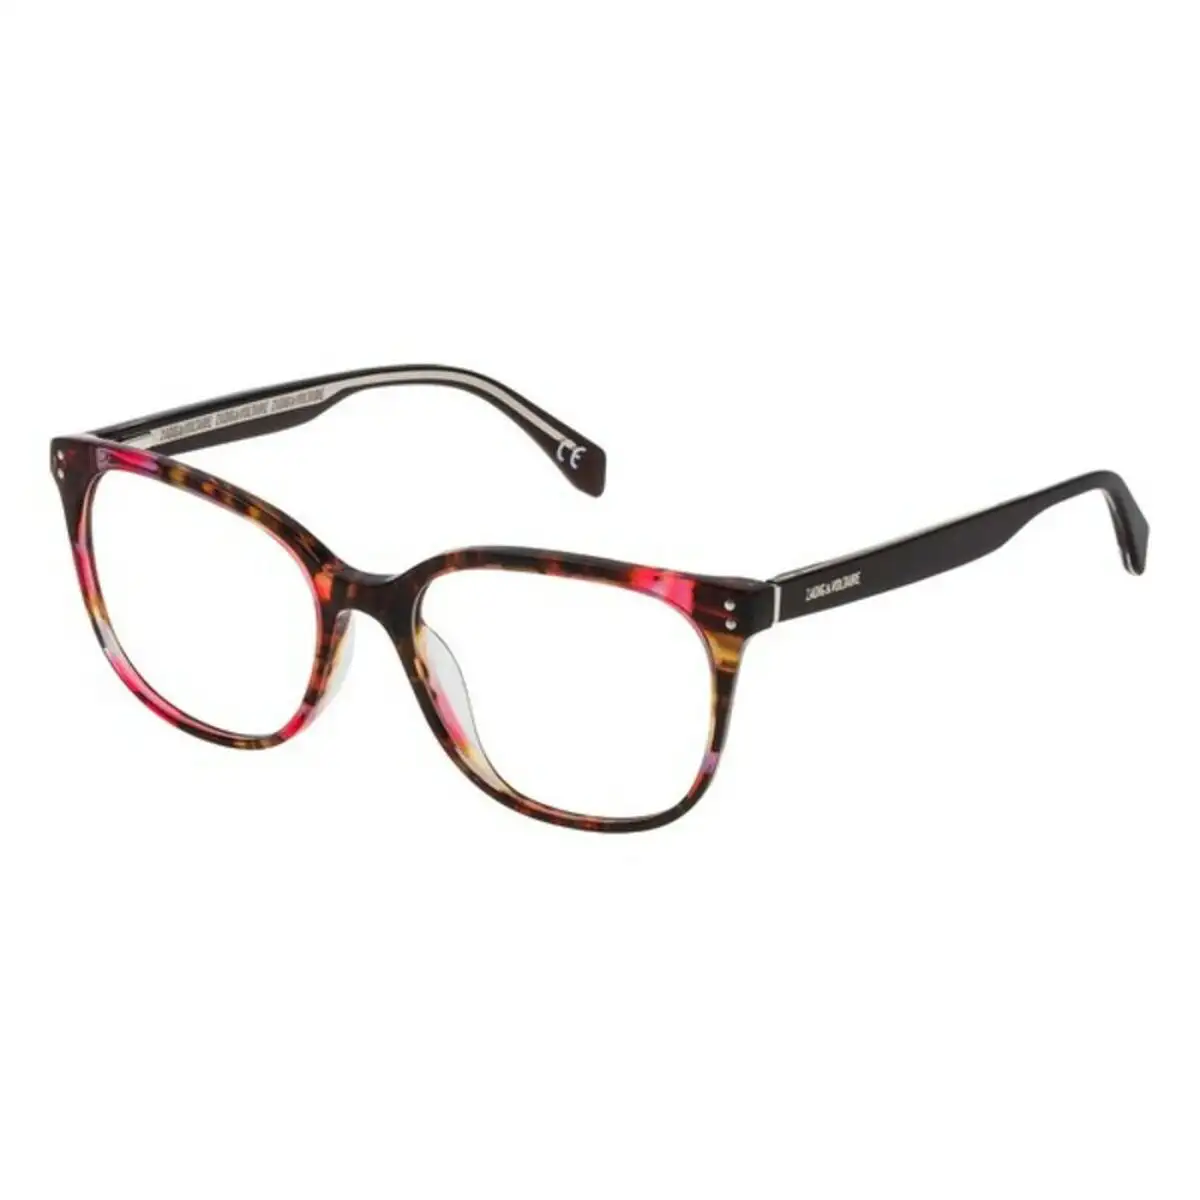 Monture de lunettes femme zadig voltaire vzv1215201gt rose fuchsia o 52 mm _3601. DIAYTAR SENEGAL - Votre Passage vers le Chic et l'Élégance. Naviguez à travers notre boutique en ligne pour trouver des produits qui ajoutent une touche sophistiquée à votre style.